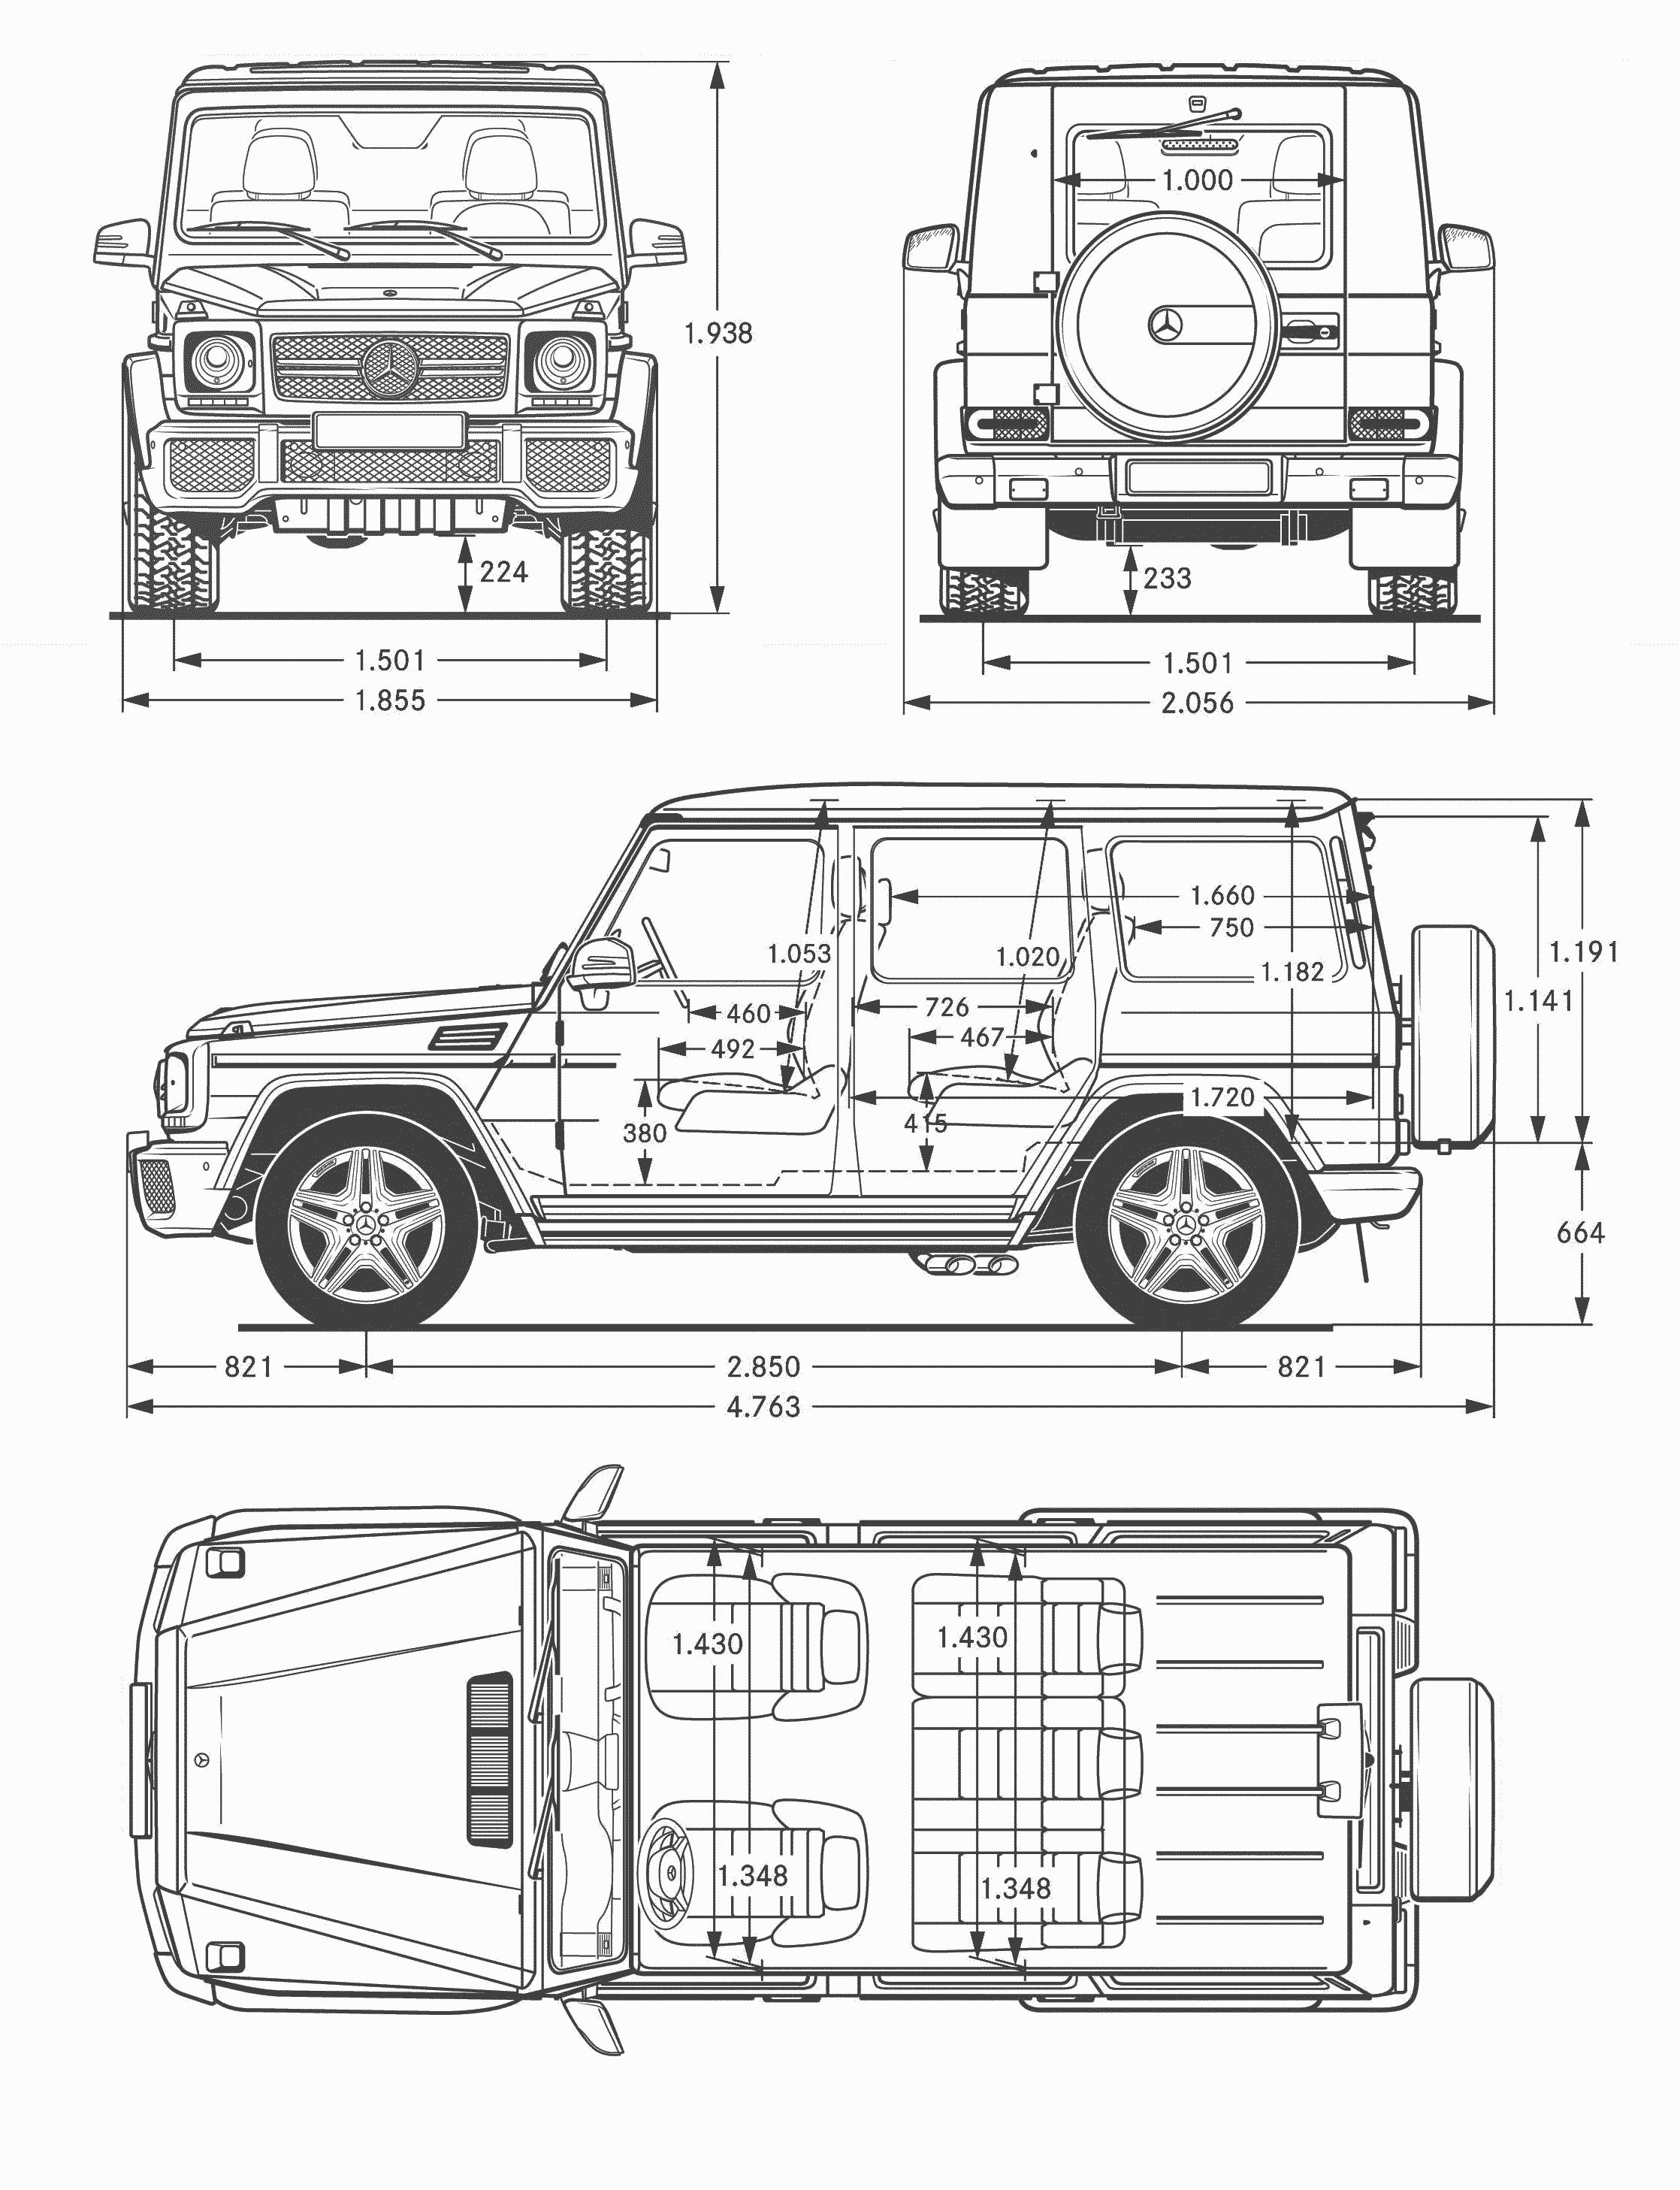 Mercedes-Benz G-Class 65 AMG blueprint